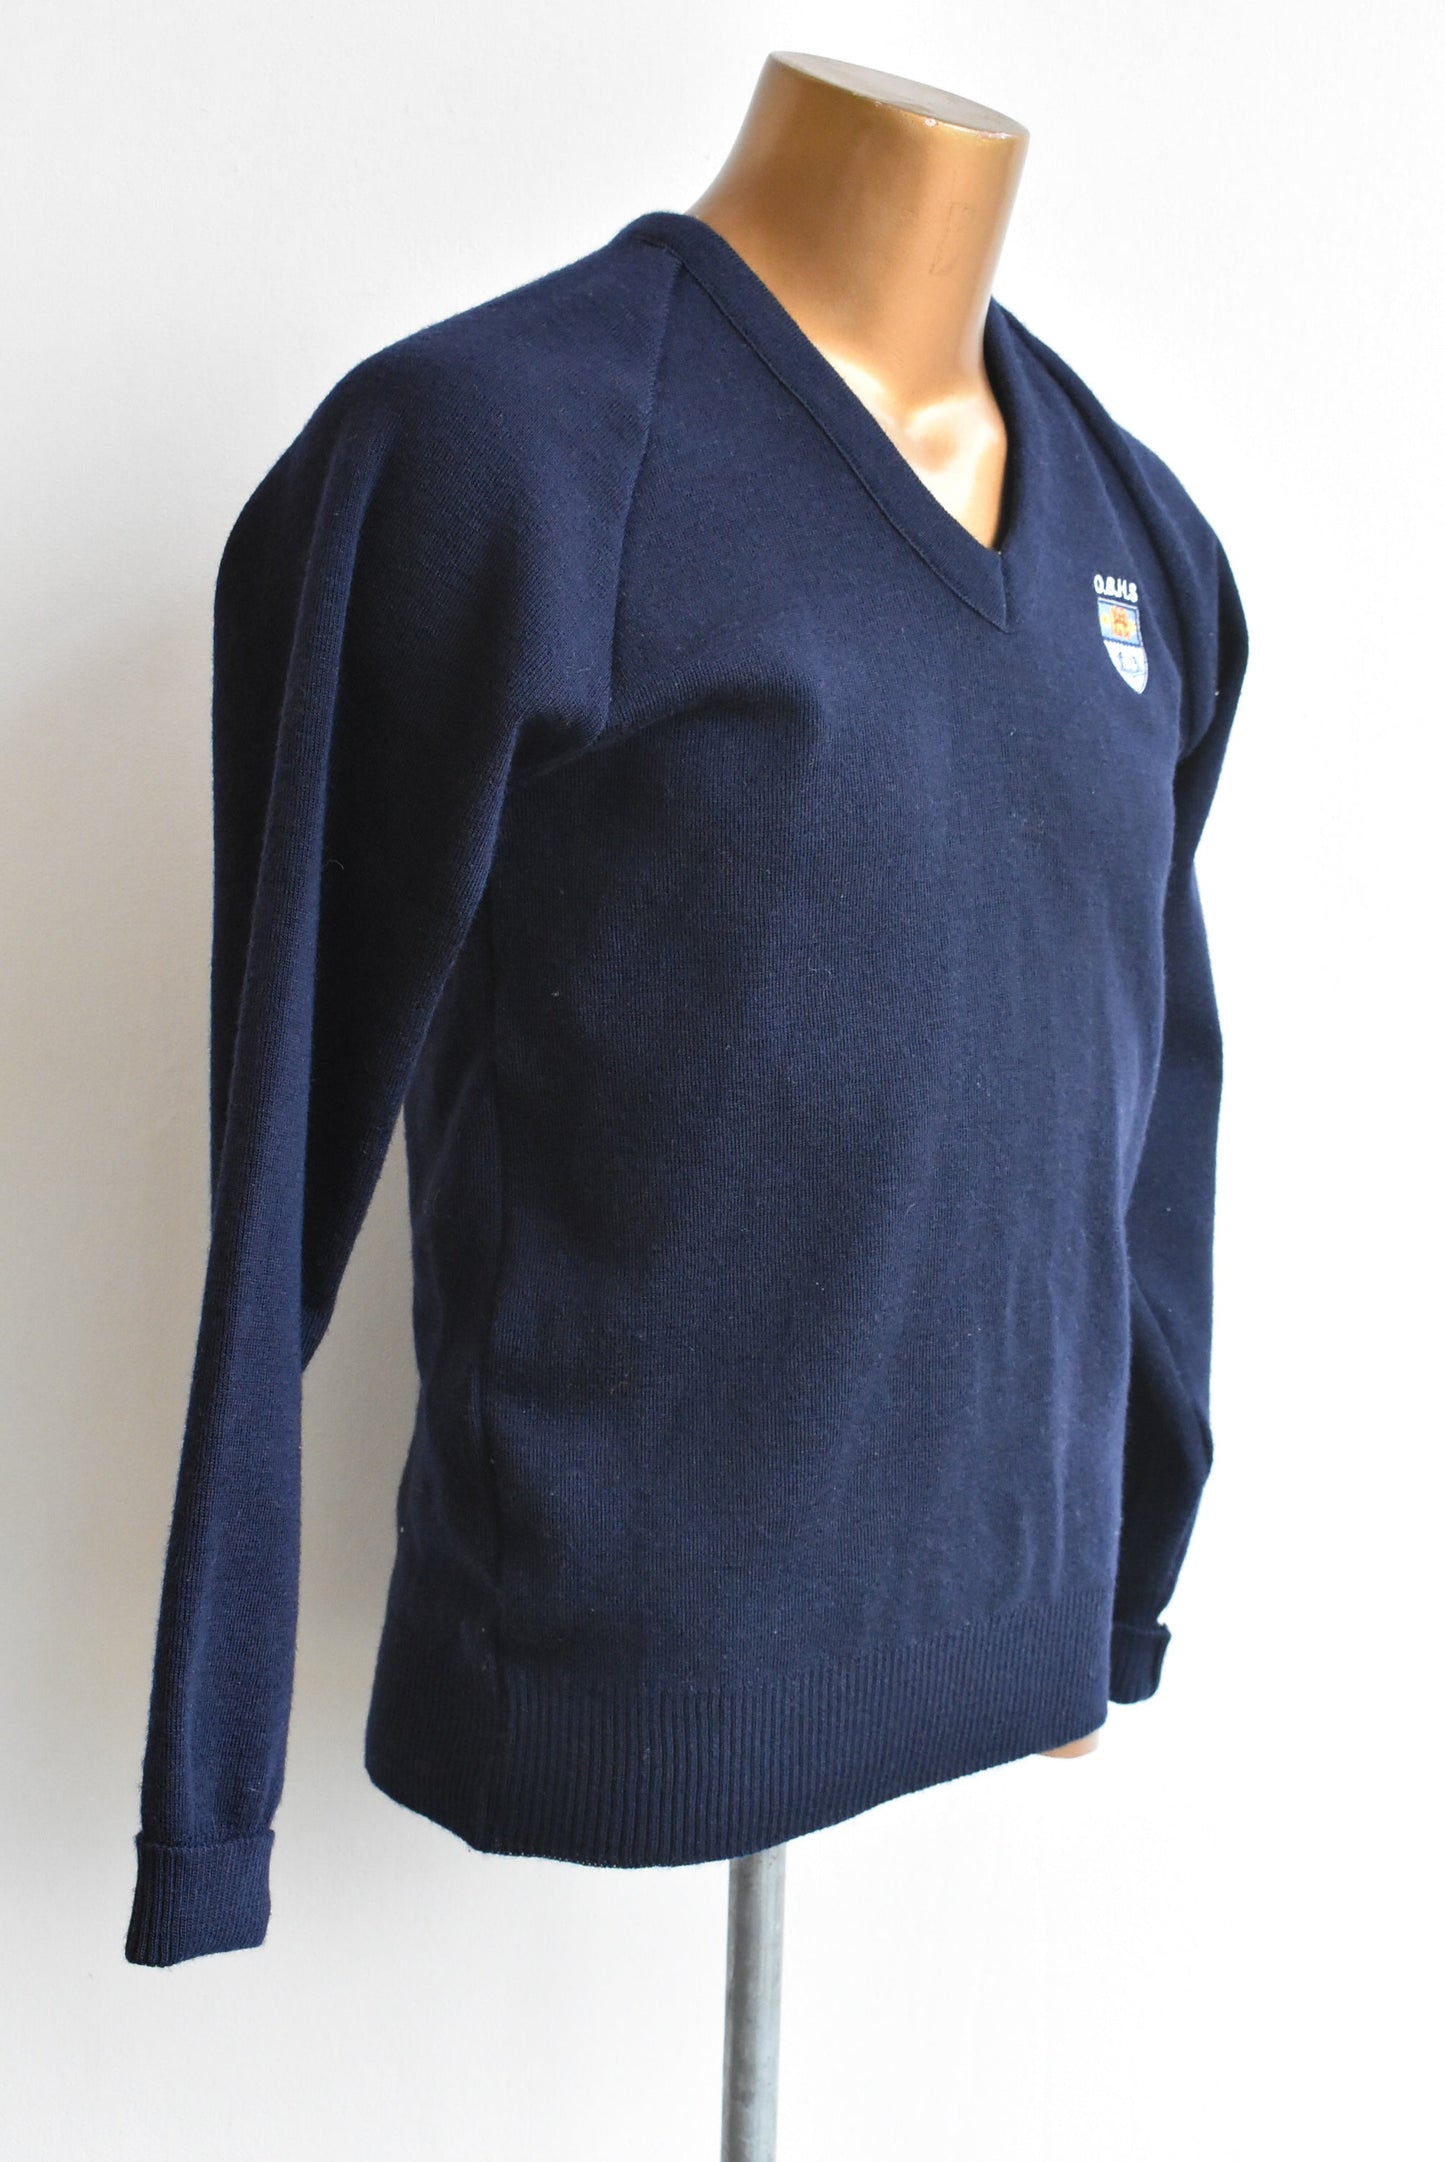 Otago Boys school jersey Classwear navy wool, 97cm